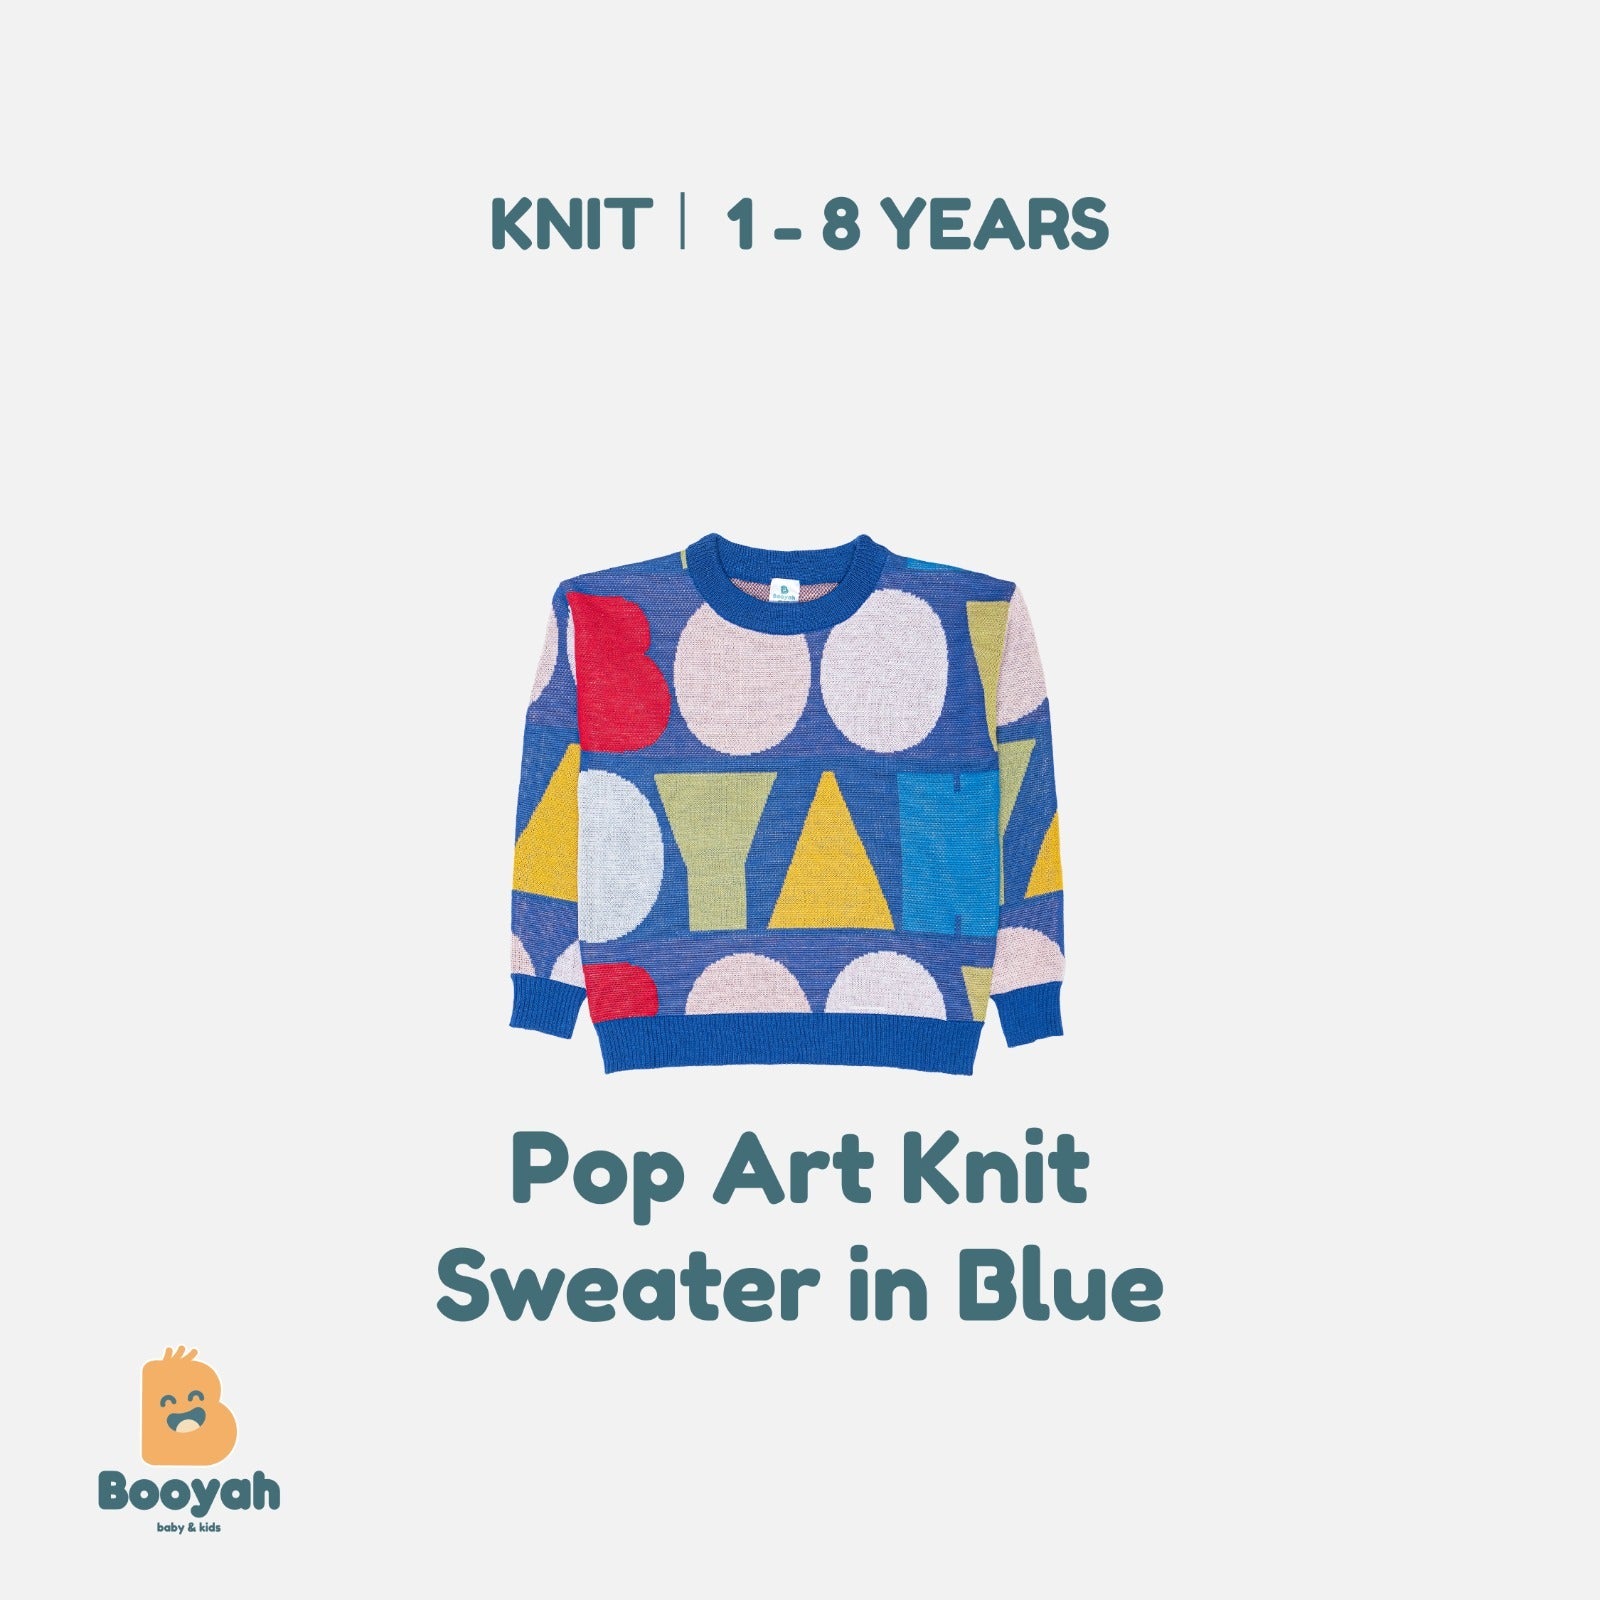 Booyah Baby & Kids Pop Art Knit Sweater in Blue